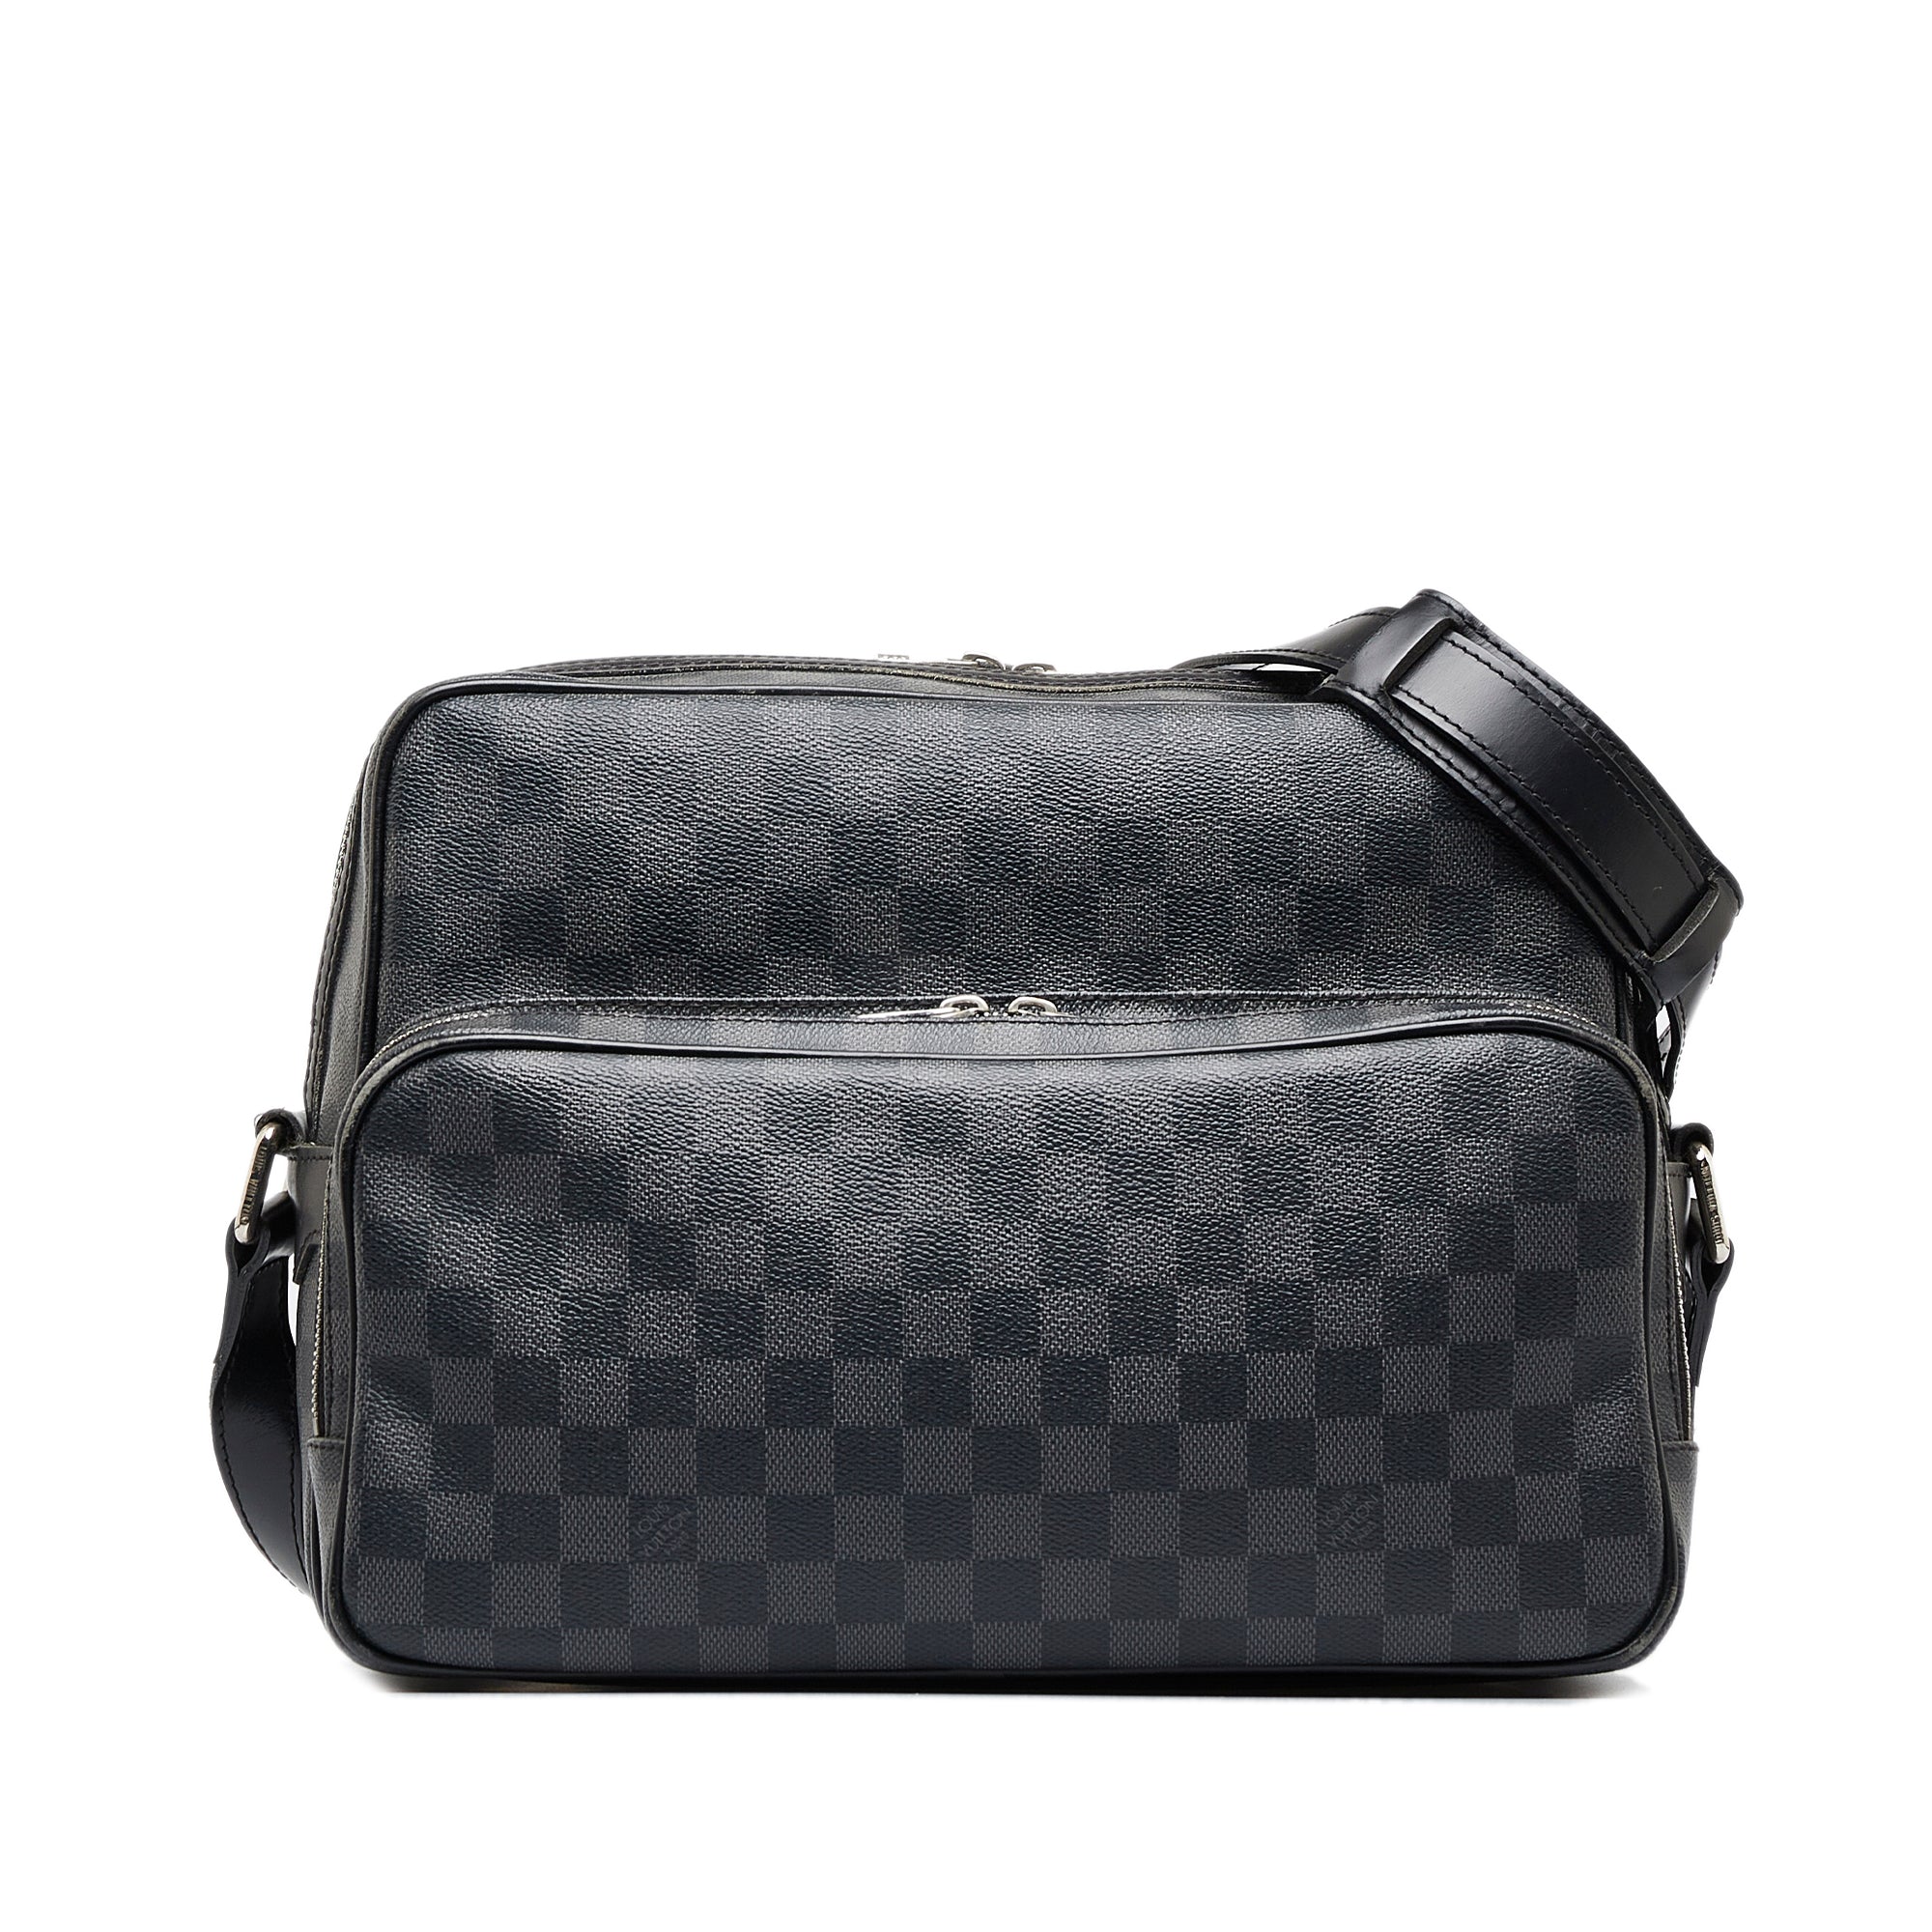 Louis Vuitton Damier Graphite Canvas Crossbody Bag on SALE